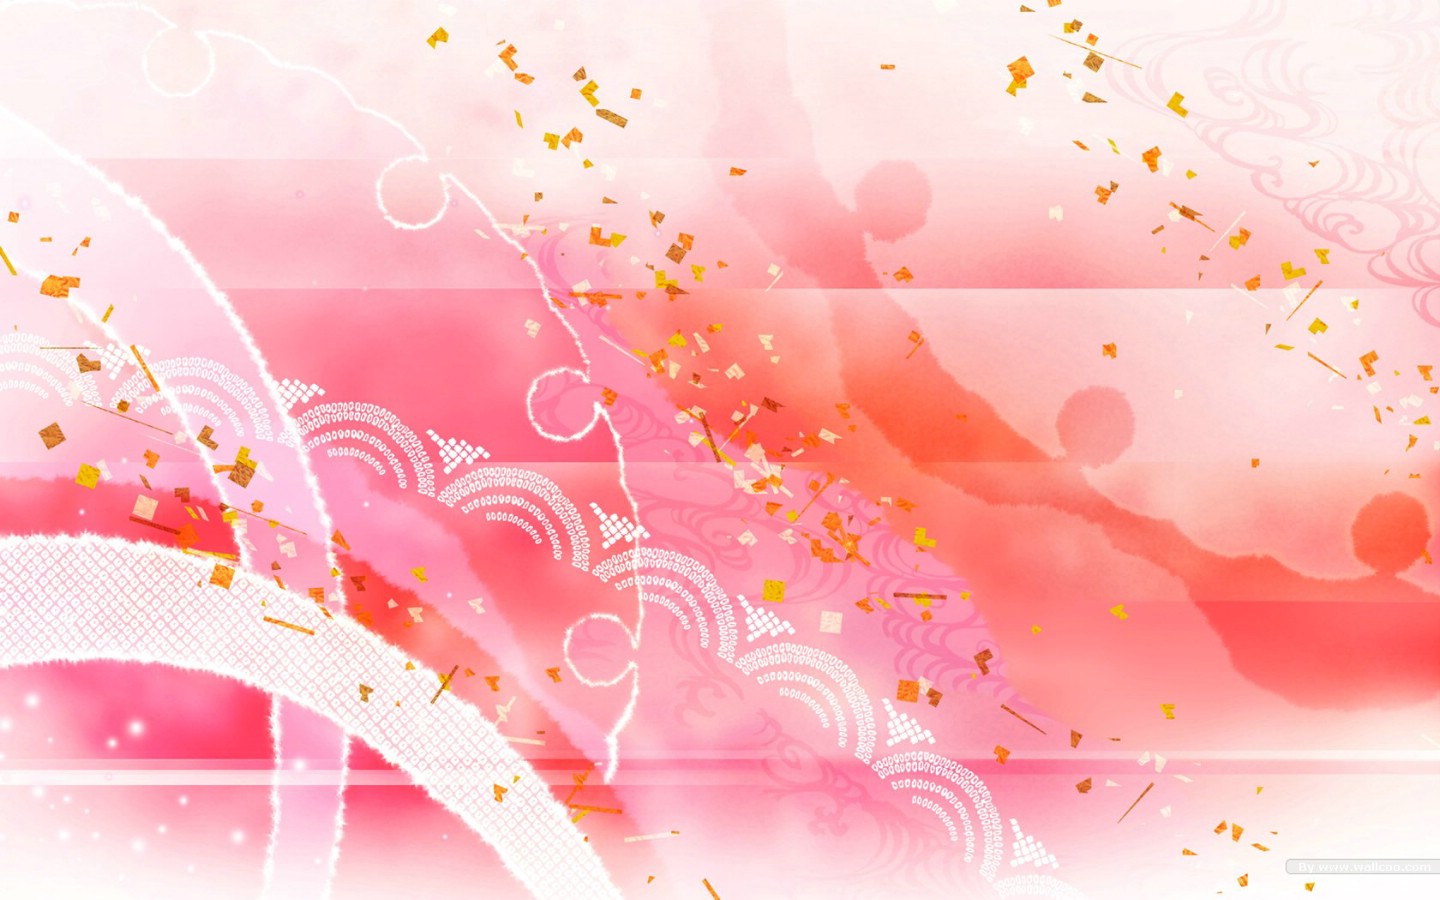 壁纸1440x900日本风格色彩与图案设计壁纸 甜美浪漫 日本风格色彩图案壁纸 日本风格色彩设计壁纸 日本风格色彩设计图片 日本风格色彩设计素材 插画壁纸 插画图库 插画图片素材桌面壁纸